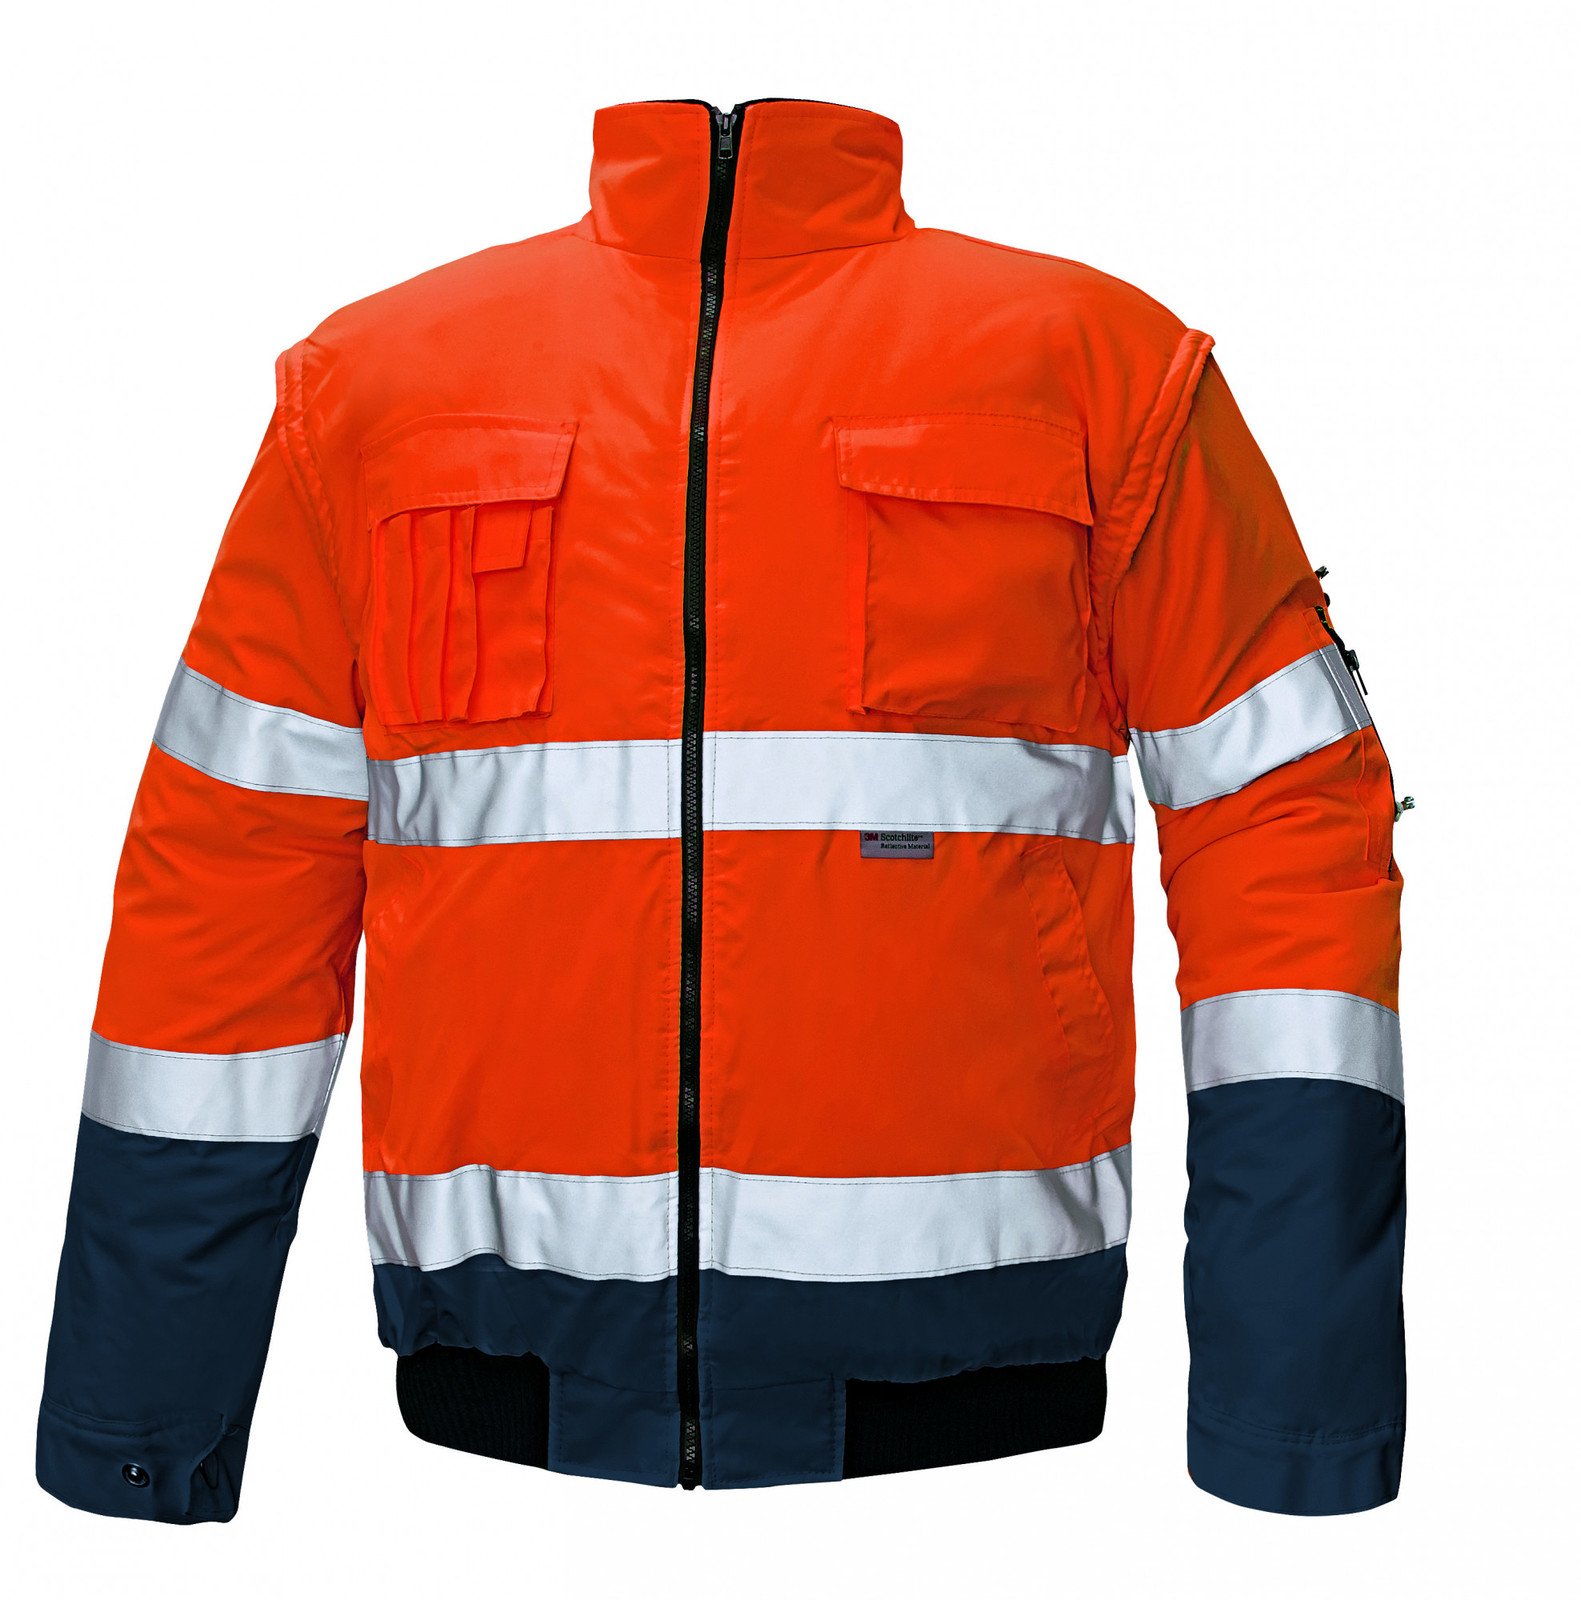 Zimná nepremokavá reflexná bunda Clovelly 2v1 - veľkosť: L, farba: oranžová/navy